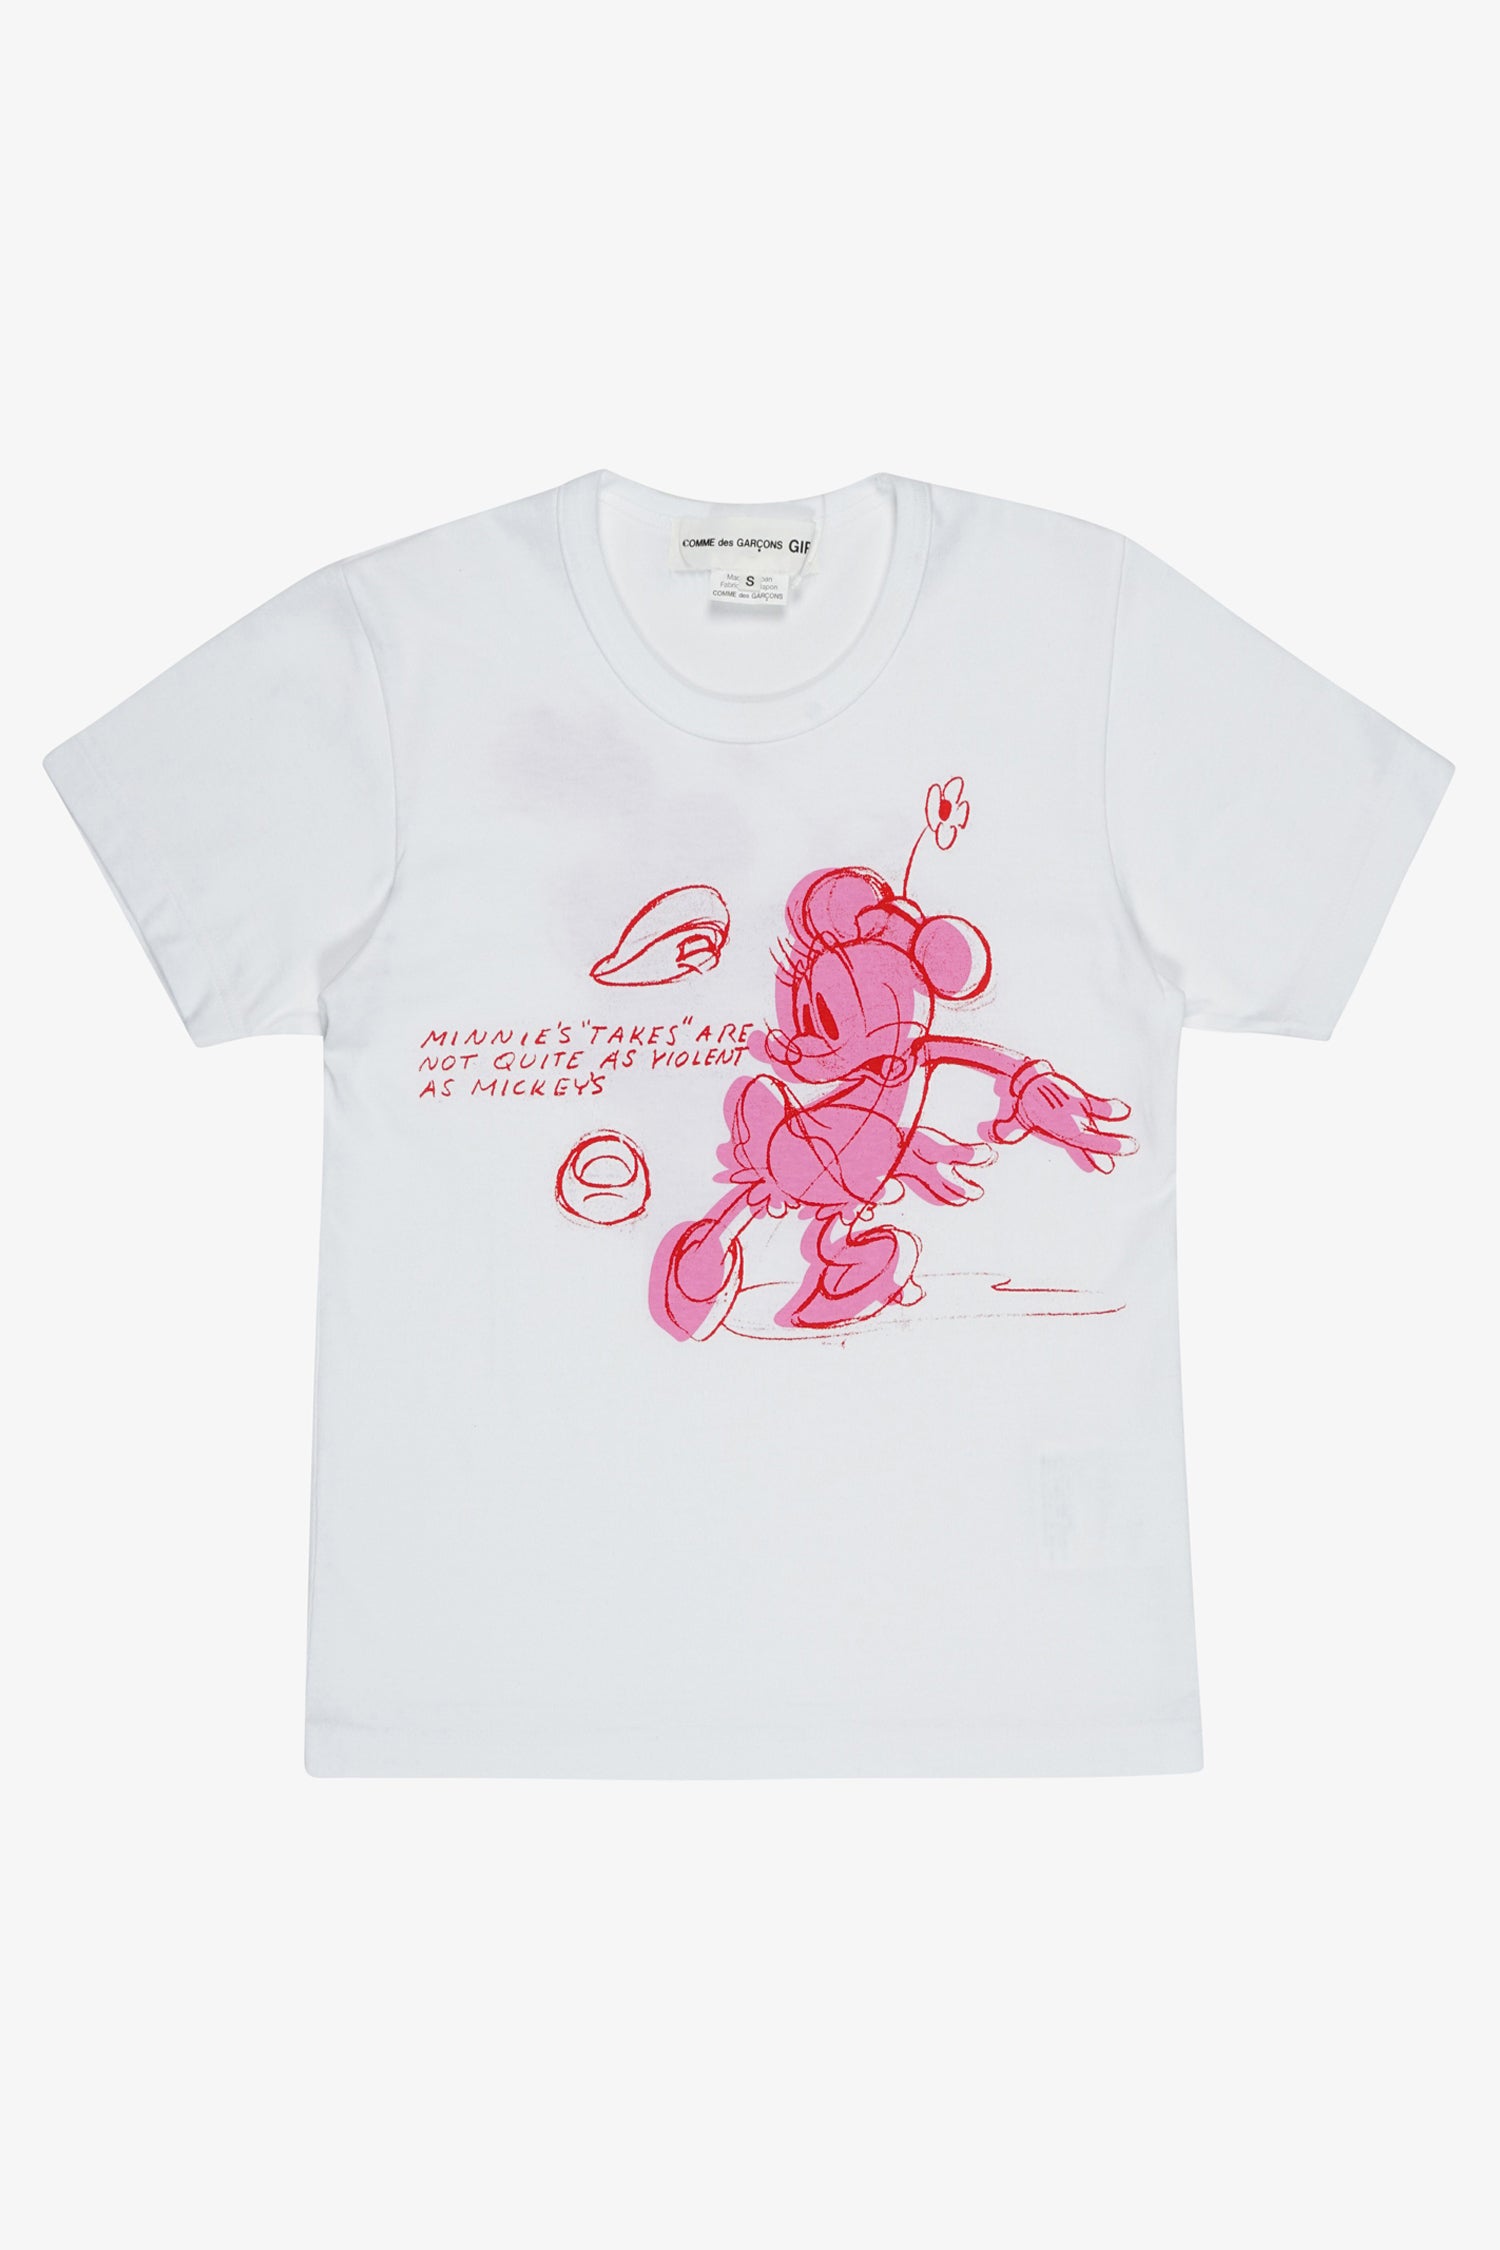 Selectshop FRAME - COMME DES GARÇONS GIRL Minnie's Takes T-Shirt T-Shirts Dubai